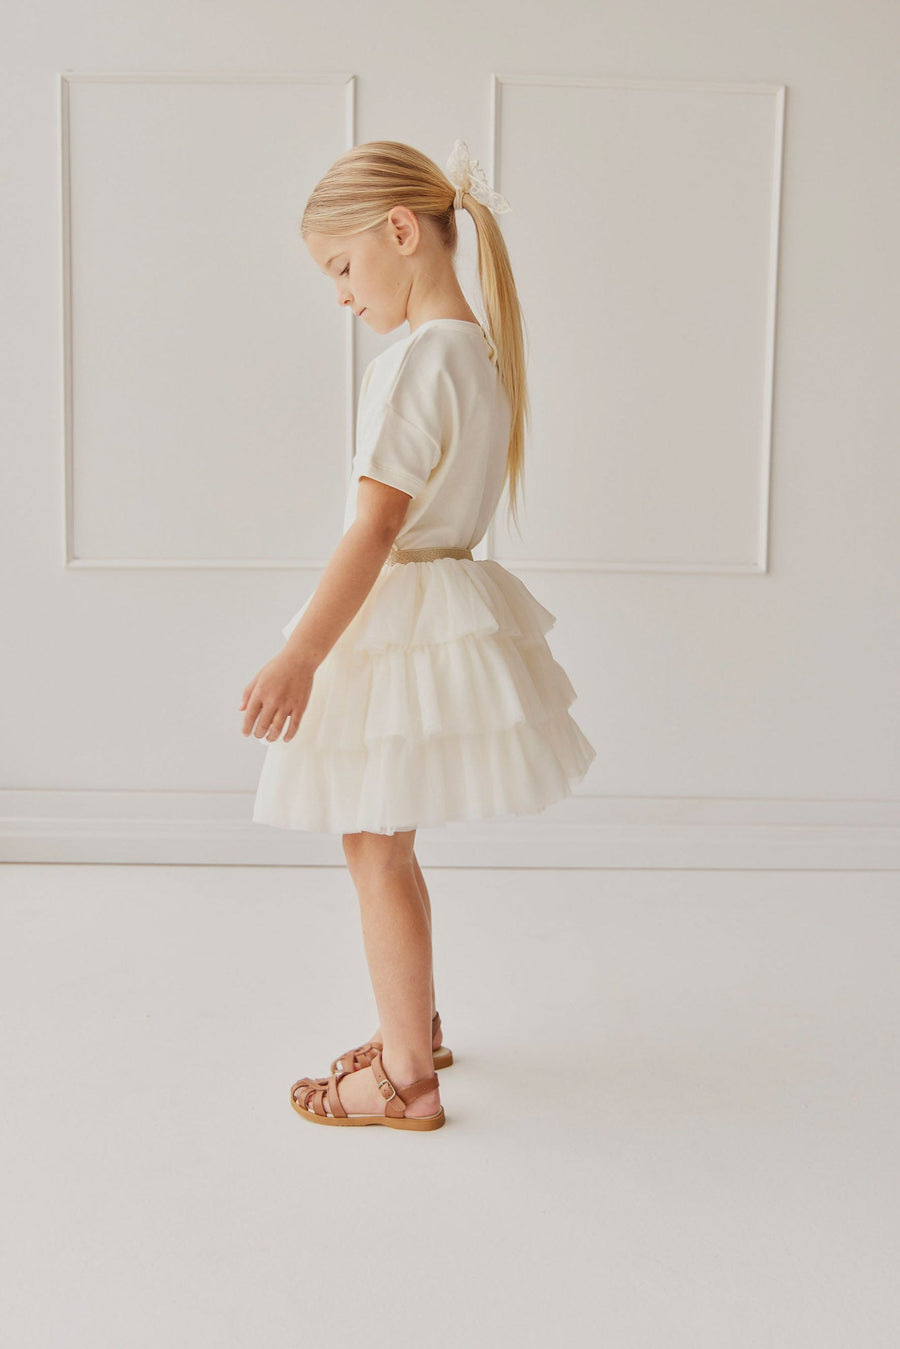 Valentina Tulle Skirt - Plaster Childrens Skirt from Jamie Kay NZ